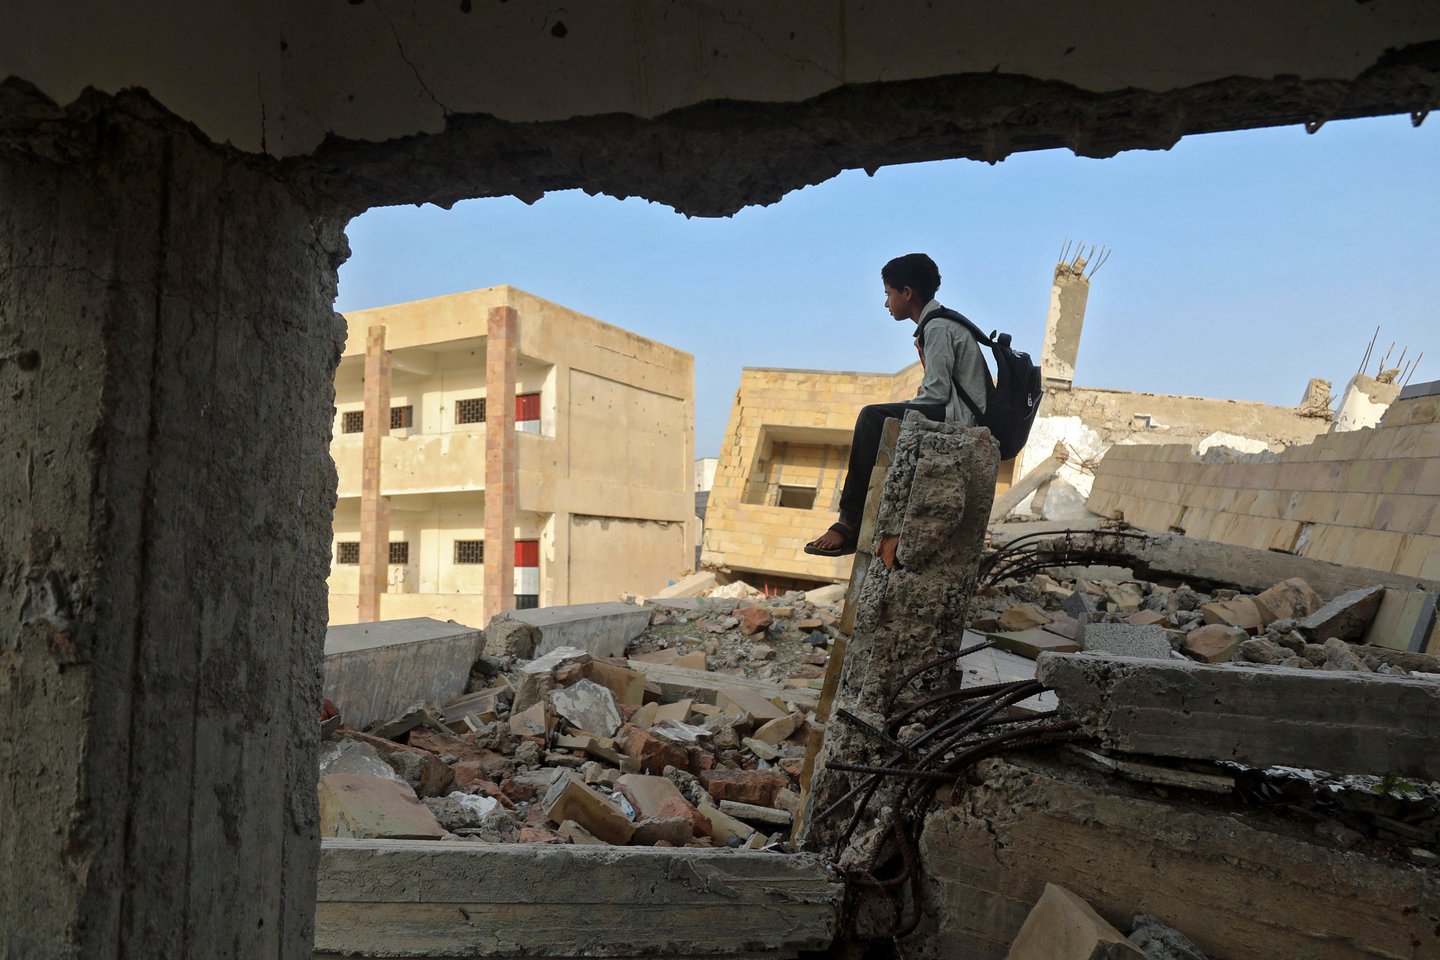  Jemeno sukilėliams pradėjus naują puolimą prieš vyriausybės tvirtovę žuvo 65 žmonės.<br> AFP/Scanpix nuotr.